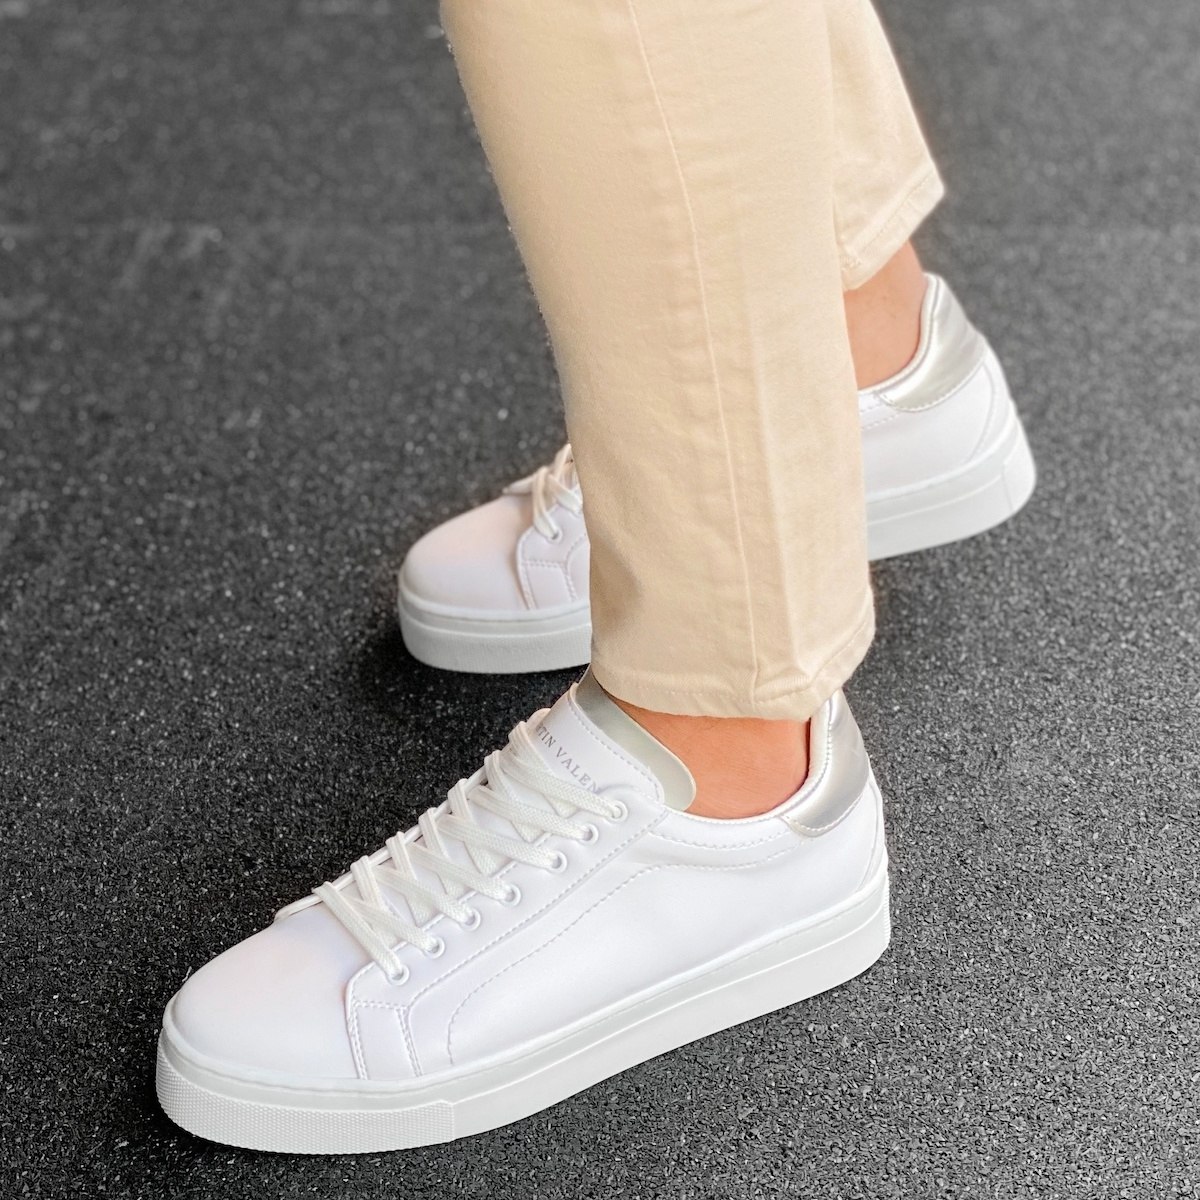 Men's Flat Sole Low Sneakers In White-Silver